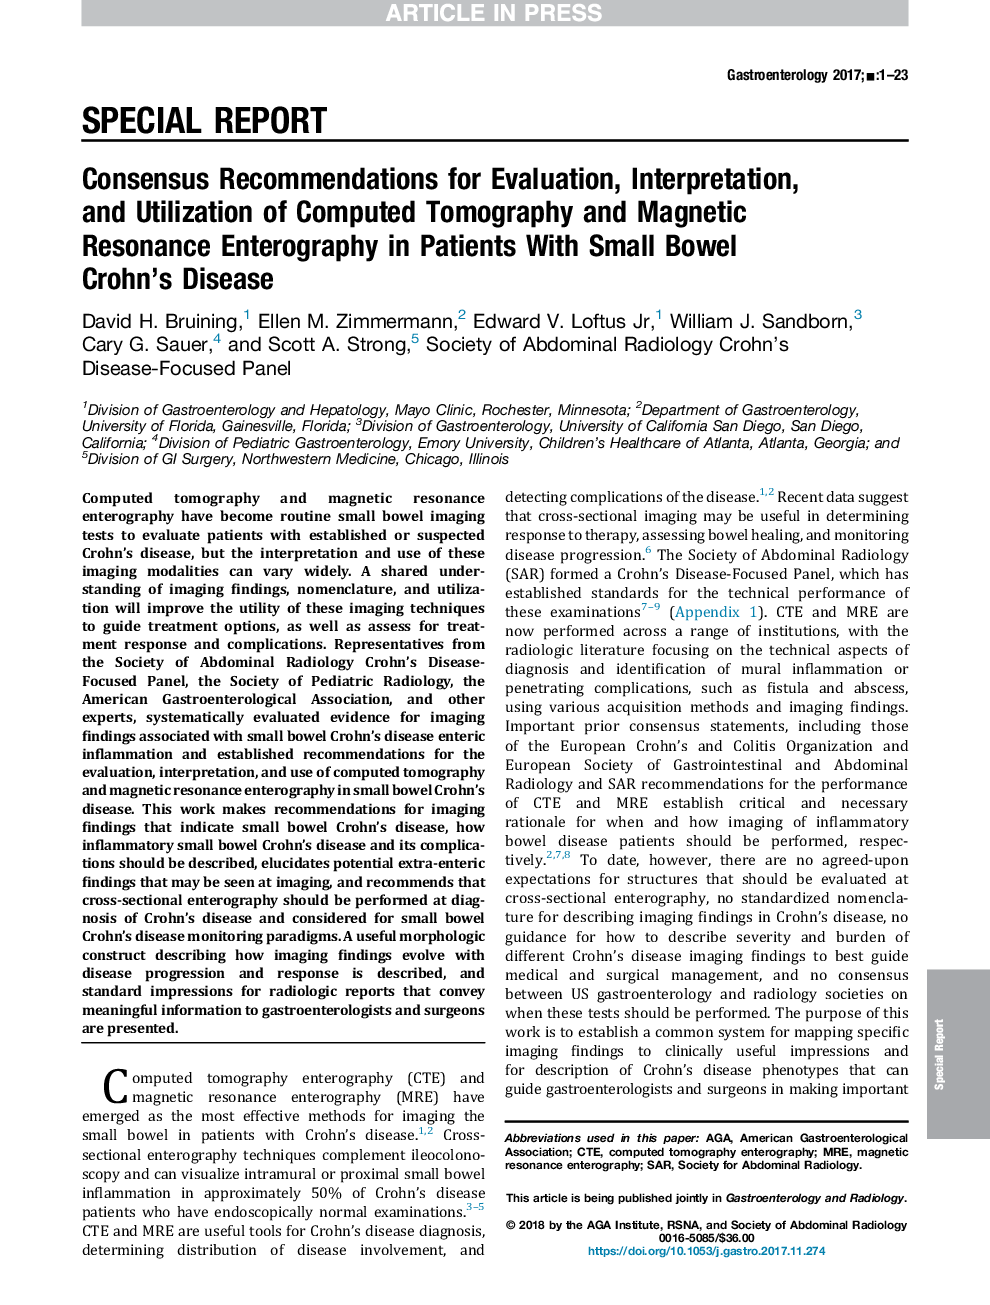 توصیه های مشارکتی برای ارزیابی، تفسیر، و استفاده از توموگرافی کامپیوتری و توموگرافی رزونانس مغناطیسی در بیماران مبتلا به کرونز کبدی کوچک 